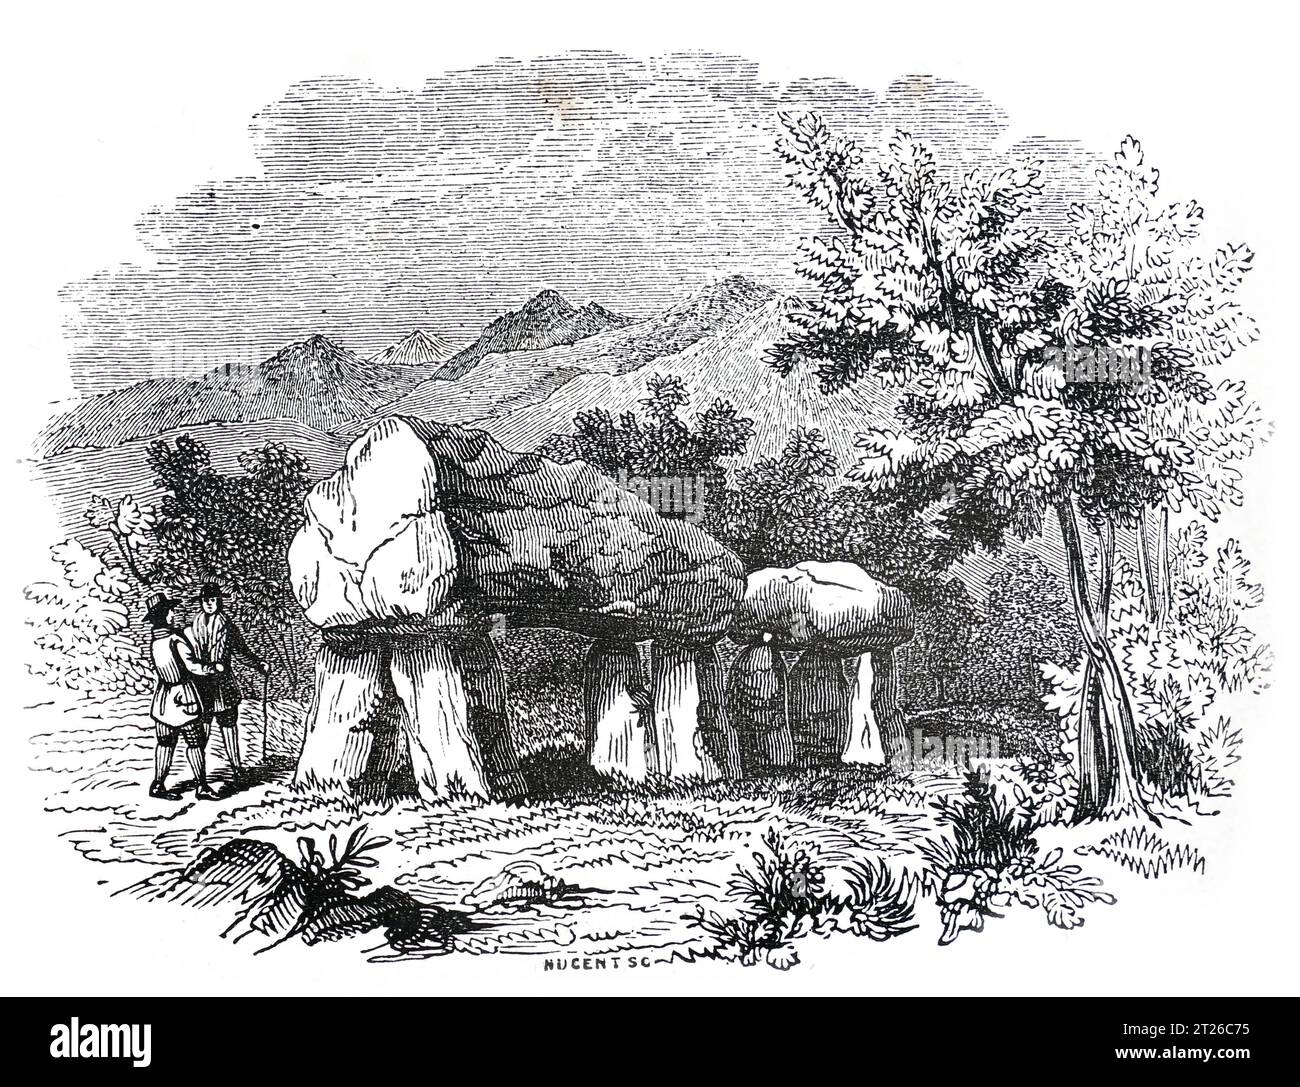 Cromlech en Plas Newydd, Anglesey. Cámara funeraria; Ilustración en blanco y negro de la 'Vieja Inglaterra' publicada por James Sangster en 1860. Foto de stock